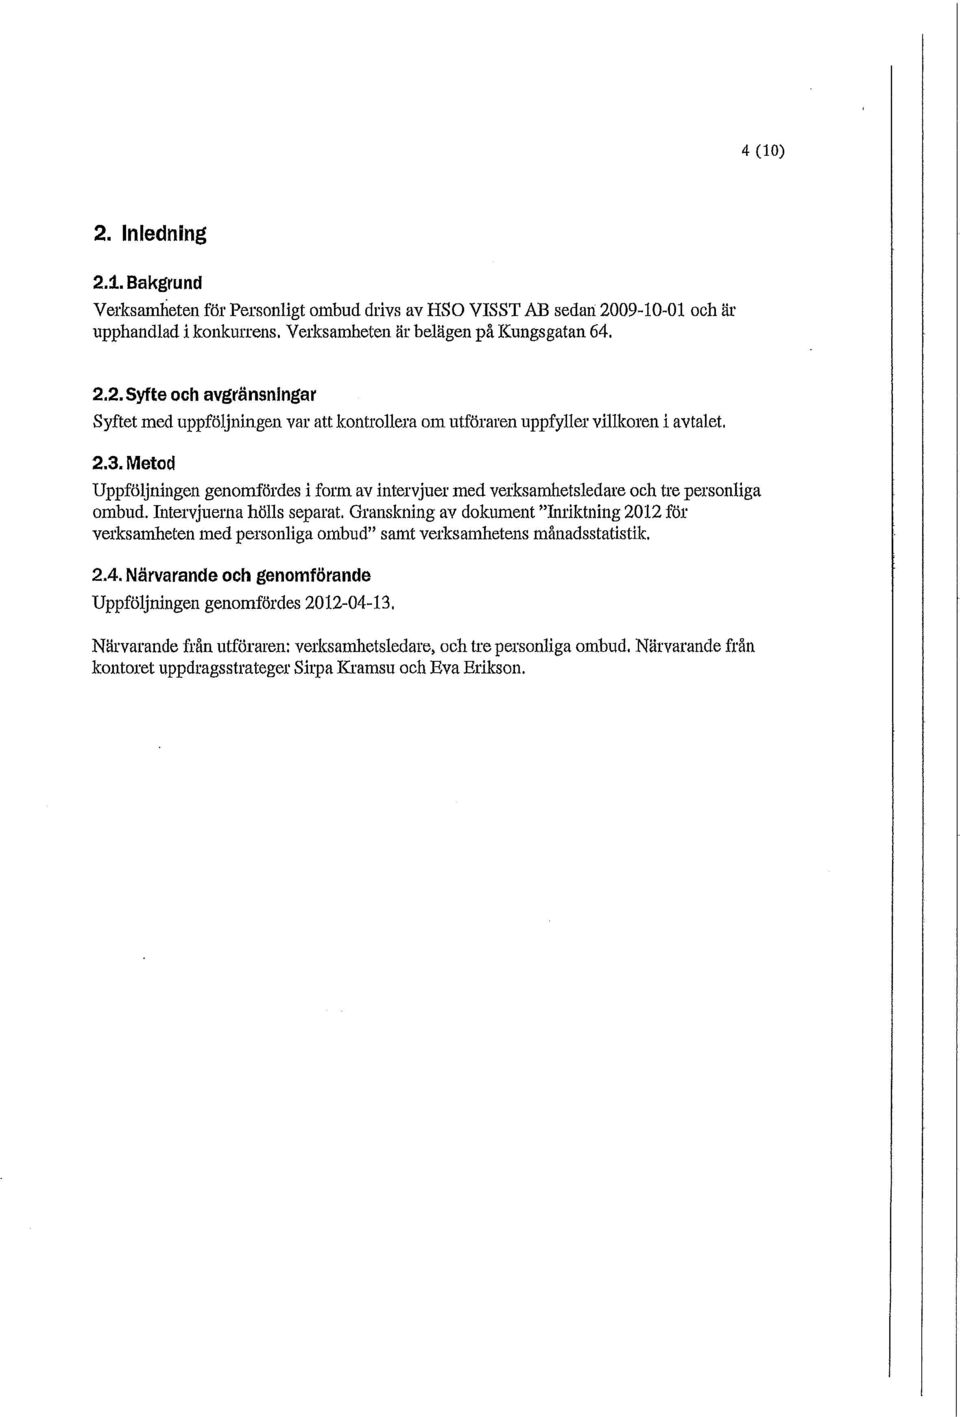 Granskning av dokument "Inriktning 2012 för verksamheten med personliga ombud" samt verksamhetens månadsstatistik. 2.4.